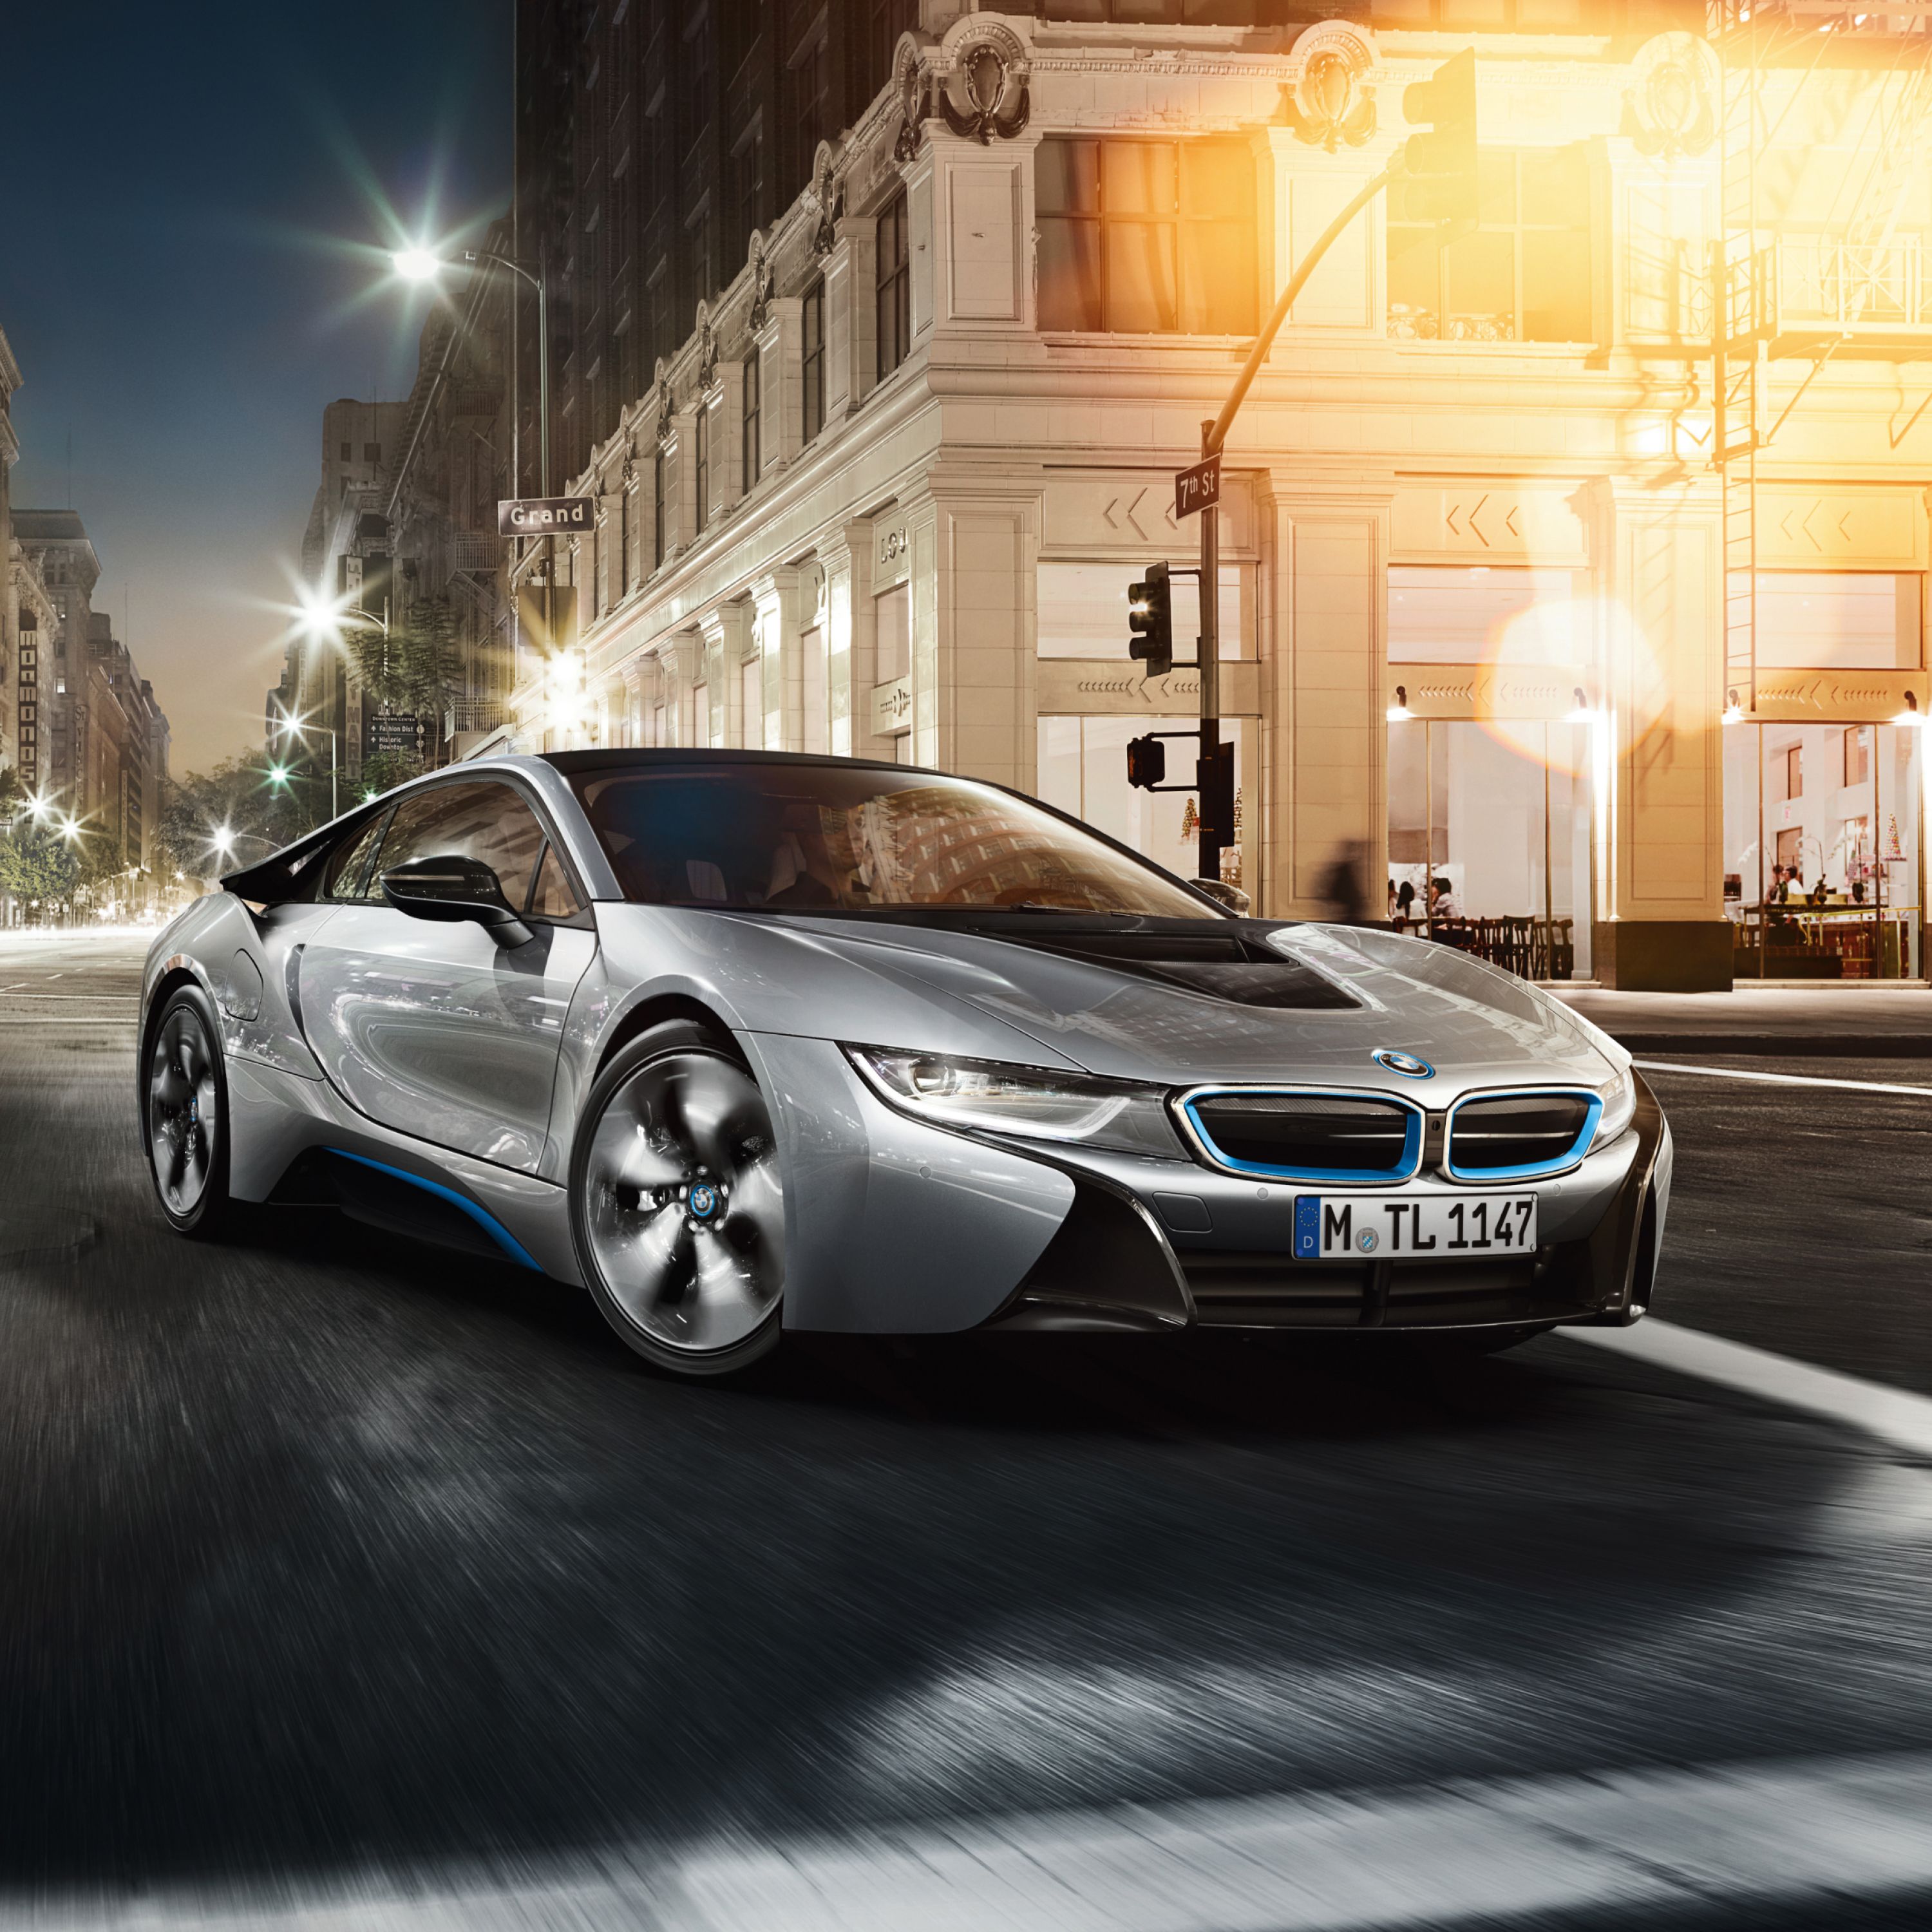 BMW i8 hybride rechargeable argentée garée devant un grand hôtel dans une grande ville